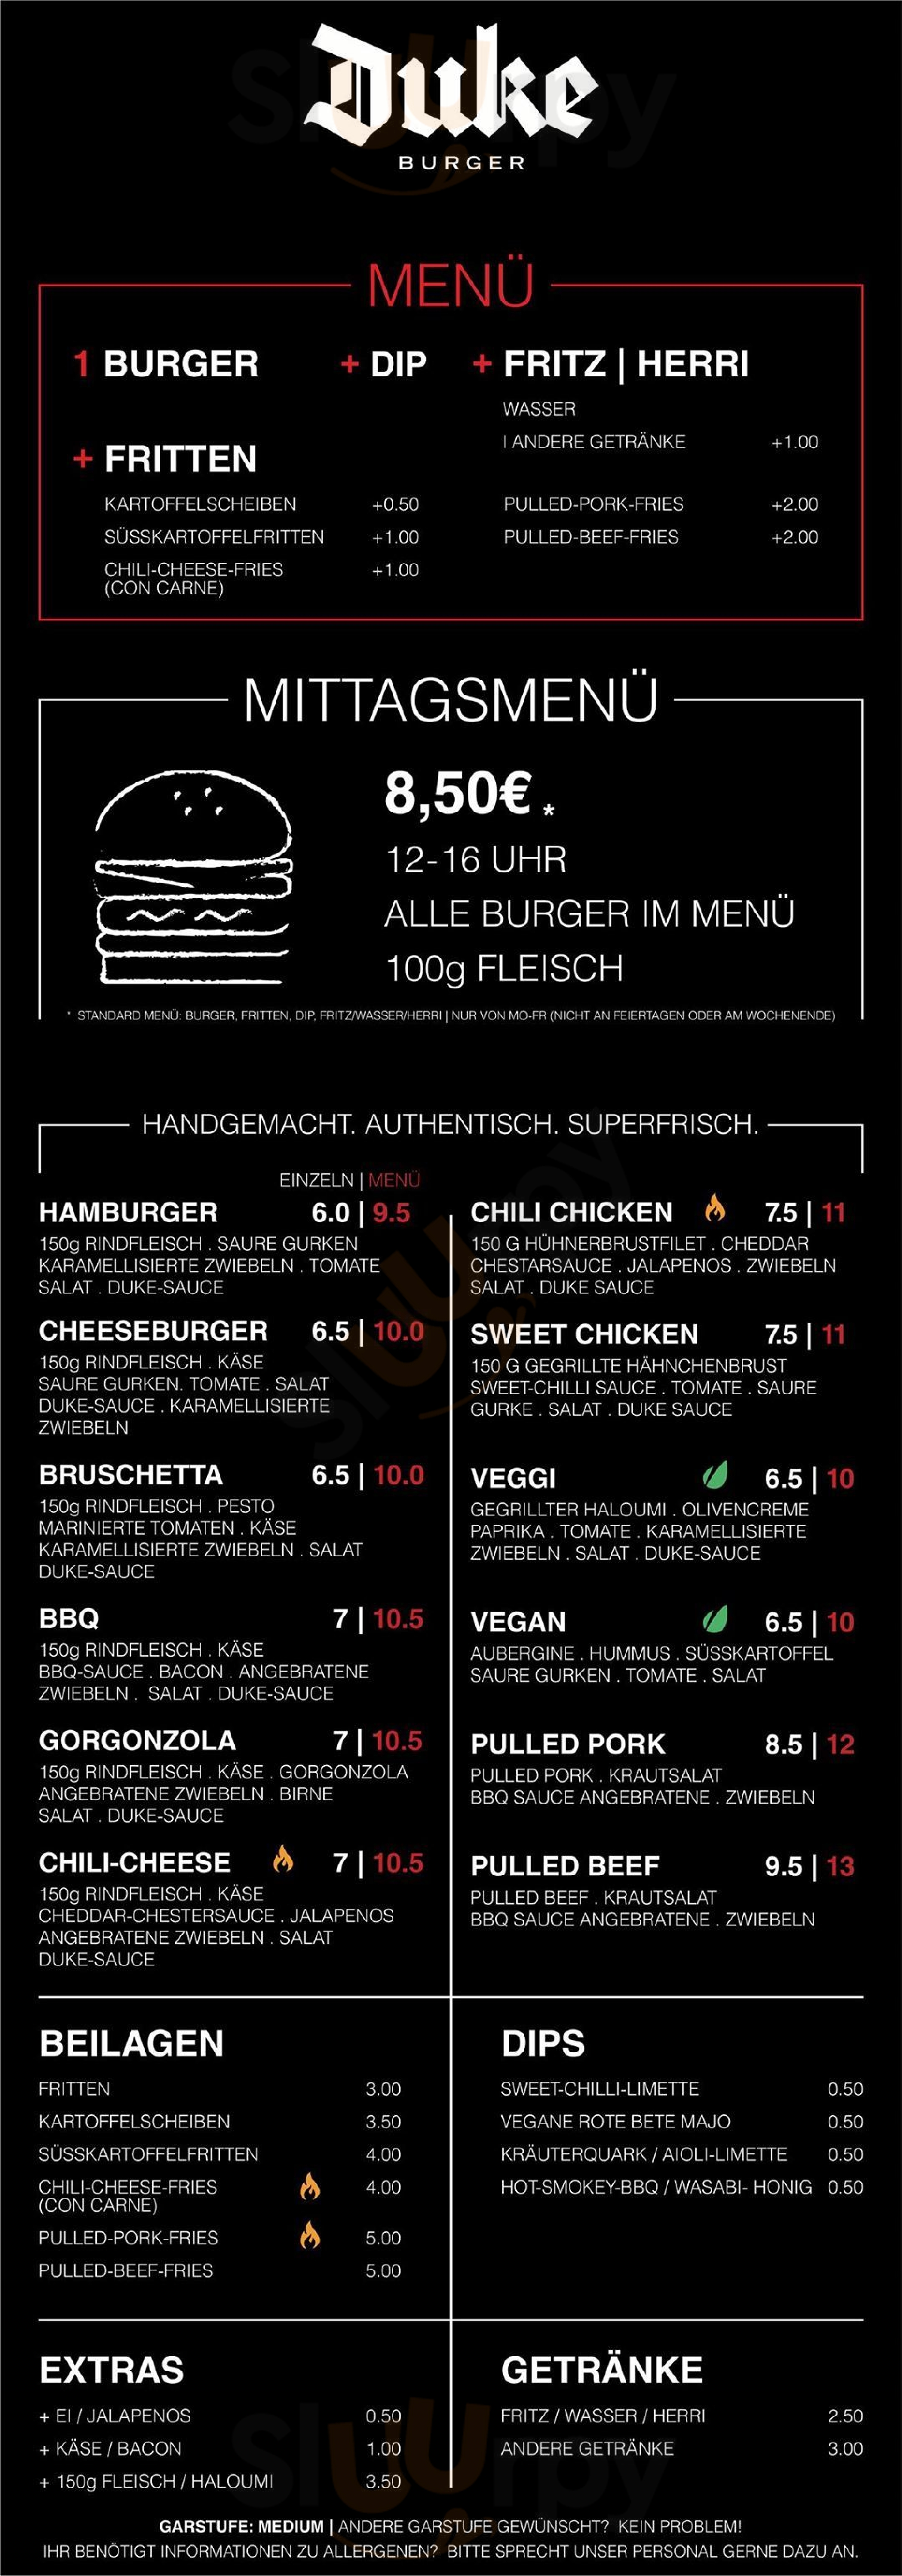 Duke Burger Hannover Menu - 1